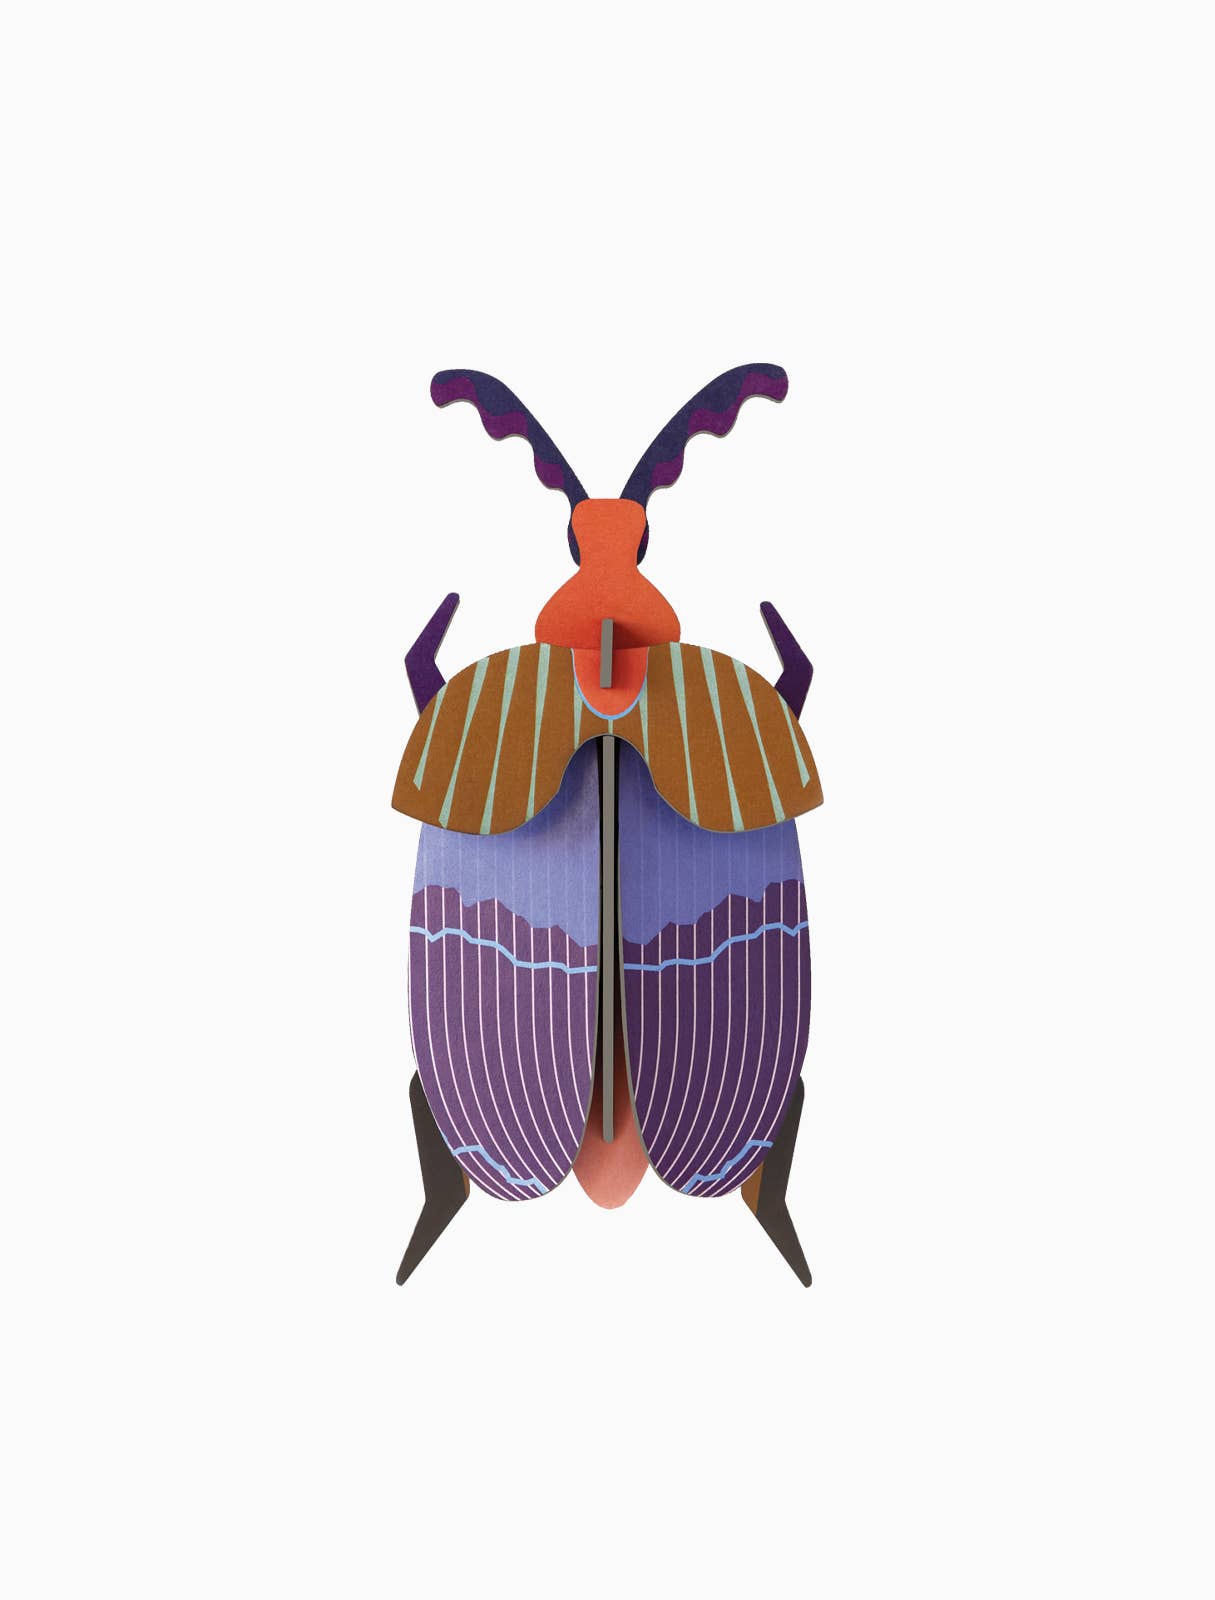 Queen Beetle - 3D DIY Wall Art